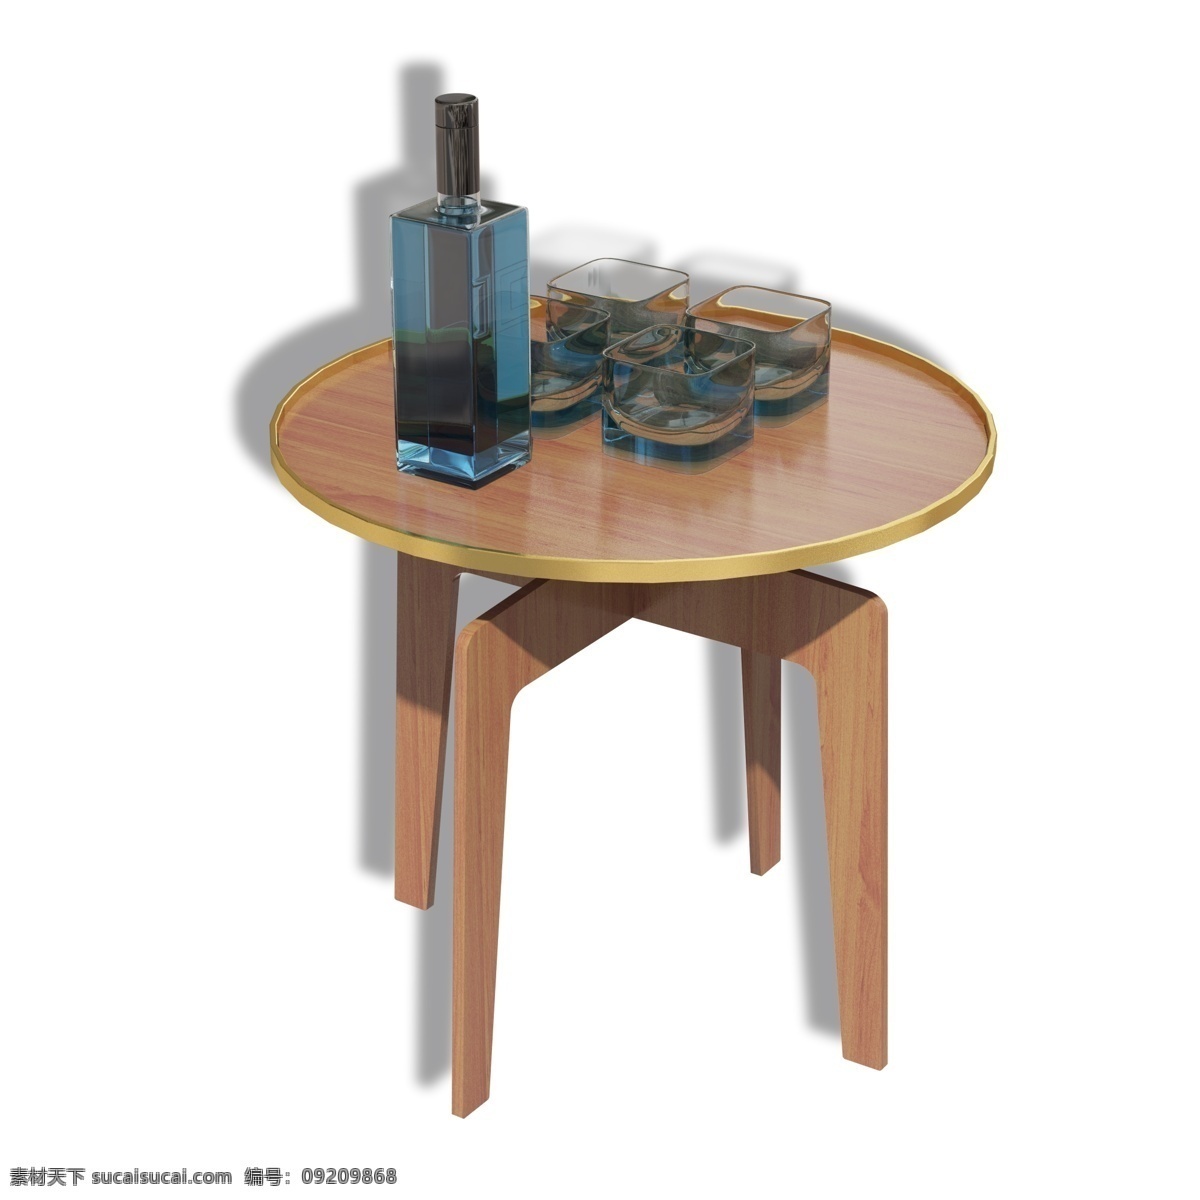 家庭 木制 小 桌椅 酒具 组合 小桌椅 酒具组合 鸡尾酒 蓝色鸡尾酒 木制小桌子 现代小桌椅 休闲座椅 金边木制桌椅